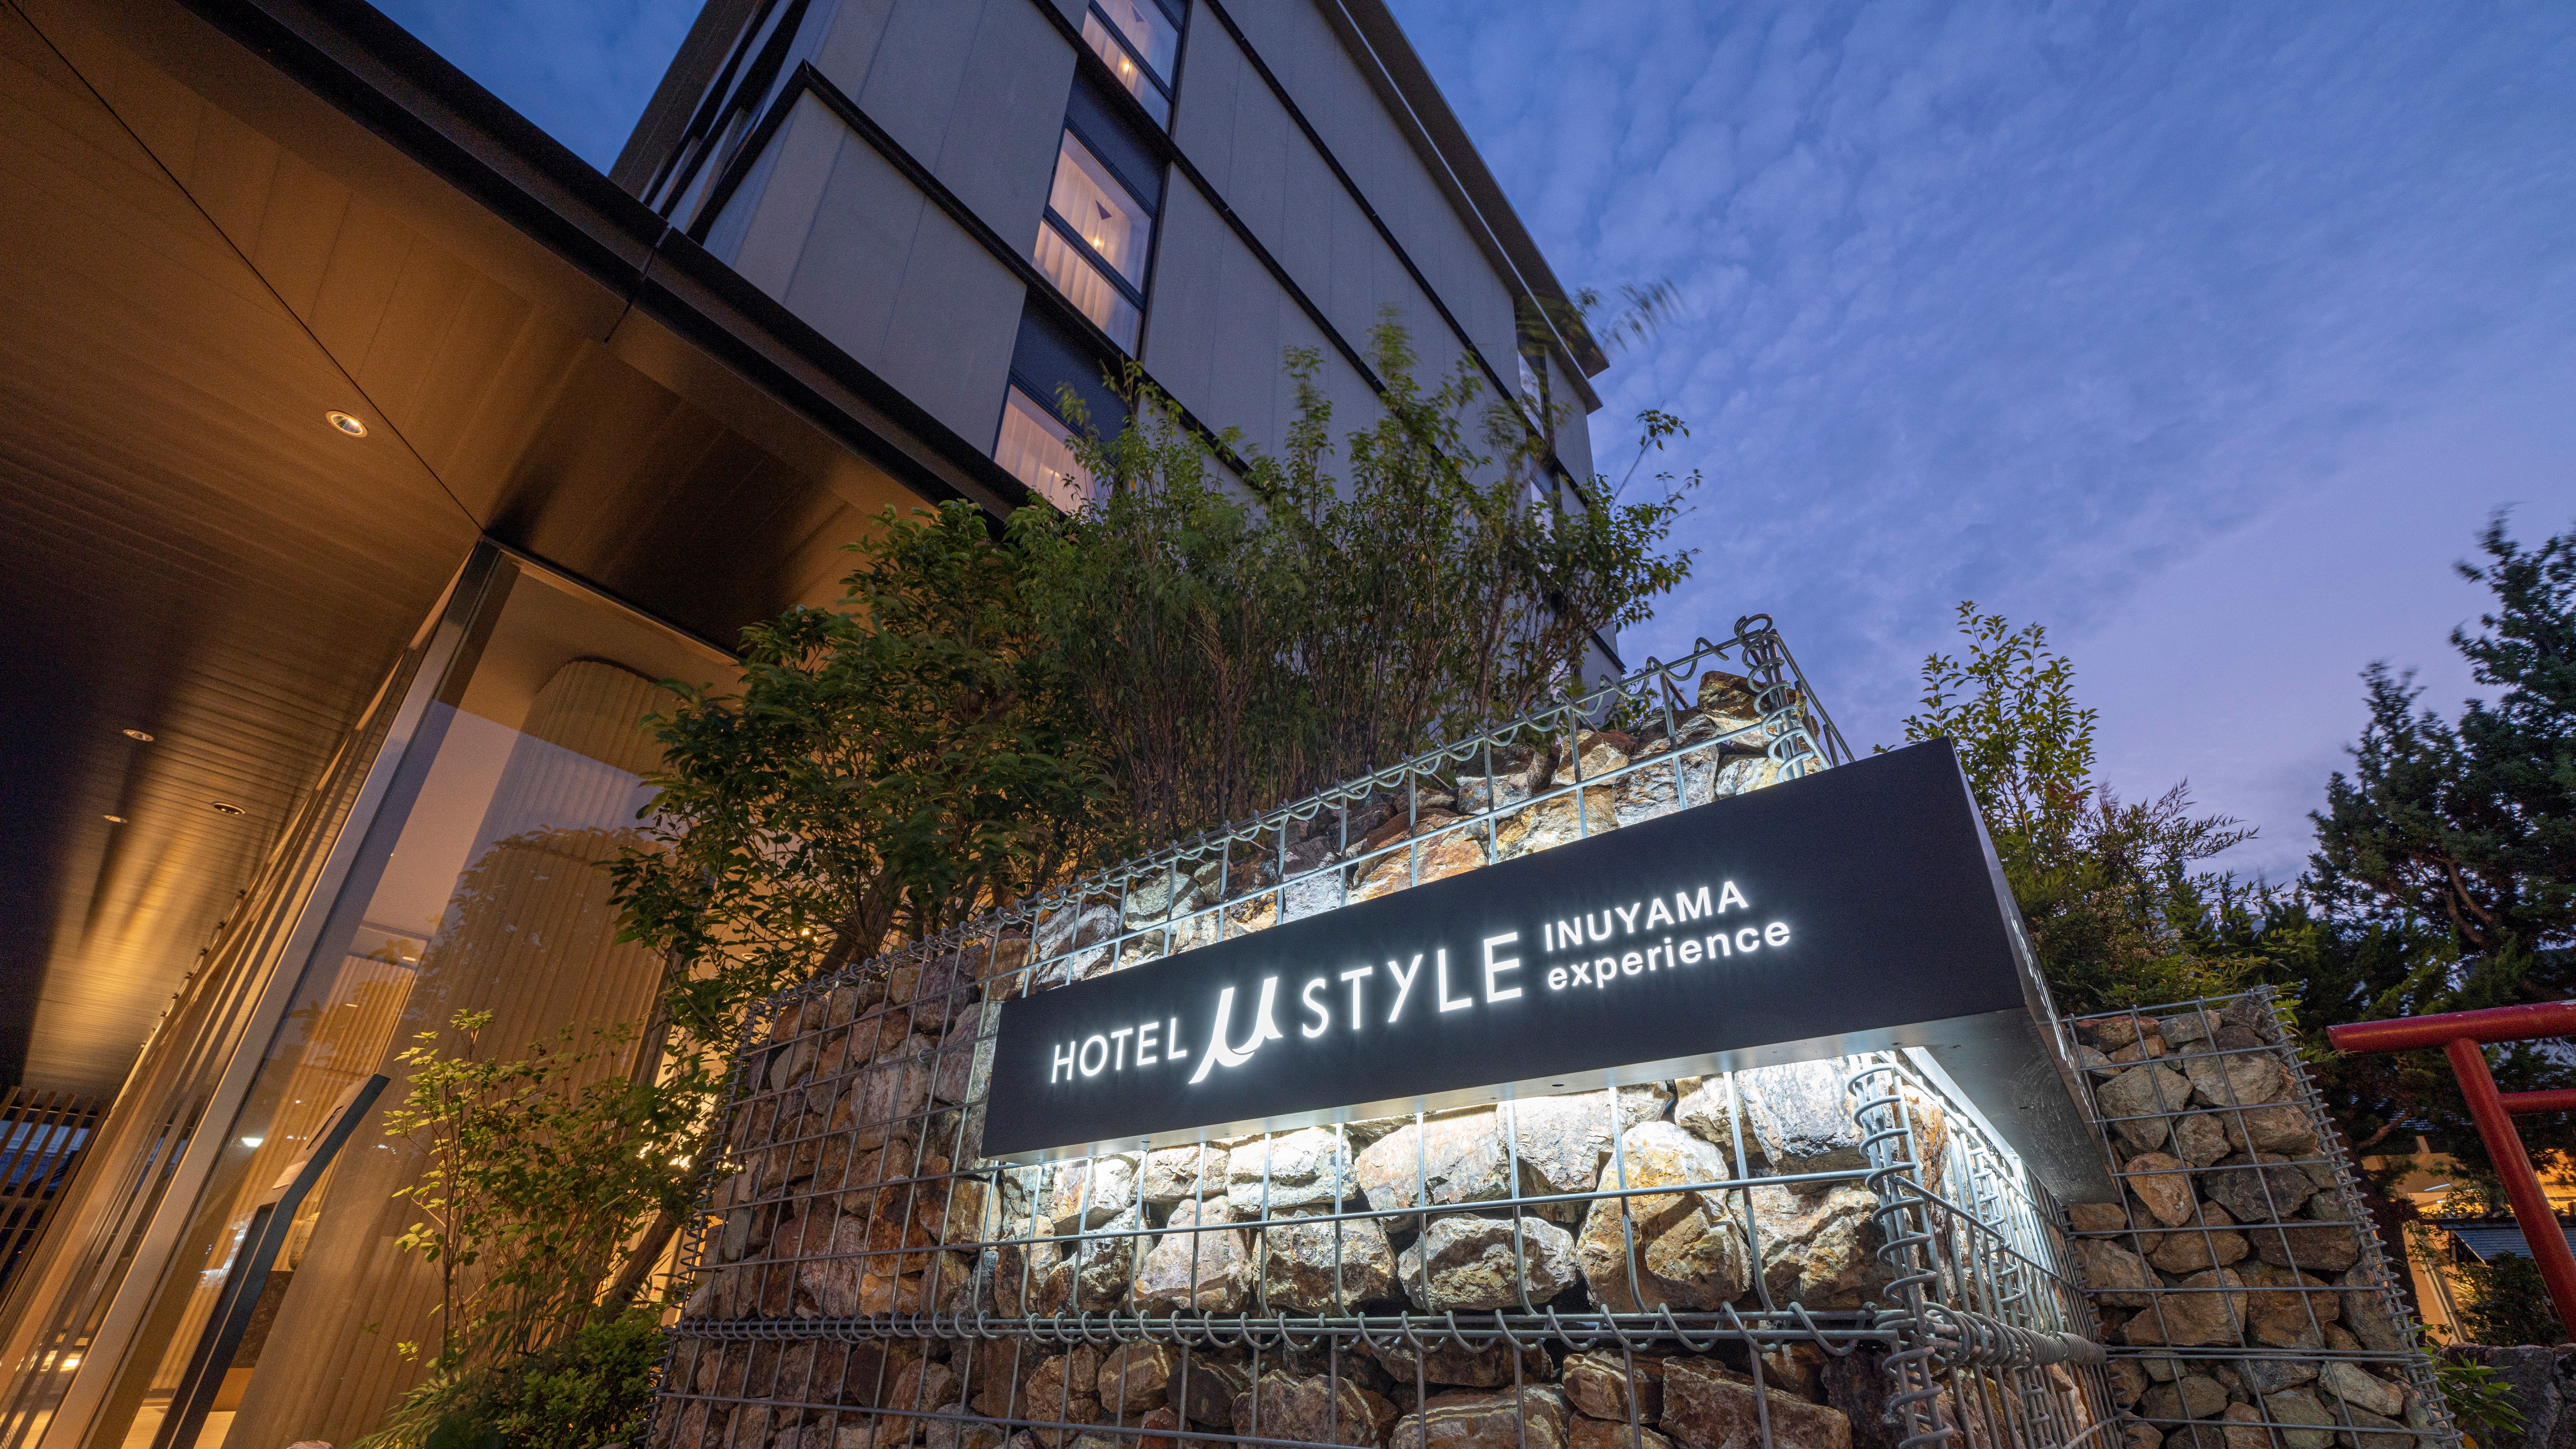 Hotel Mu Style Inuyama Experience